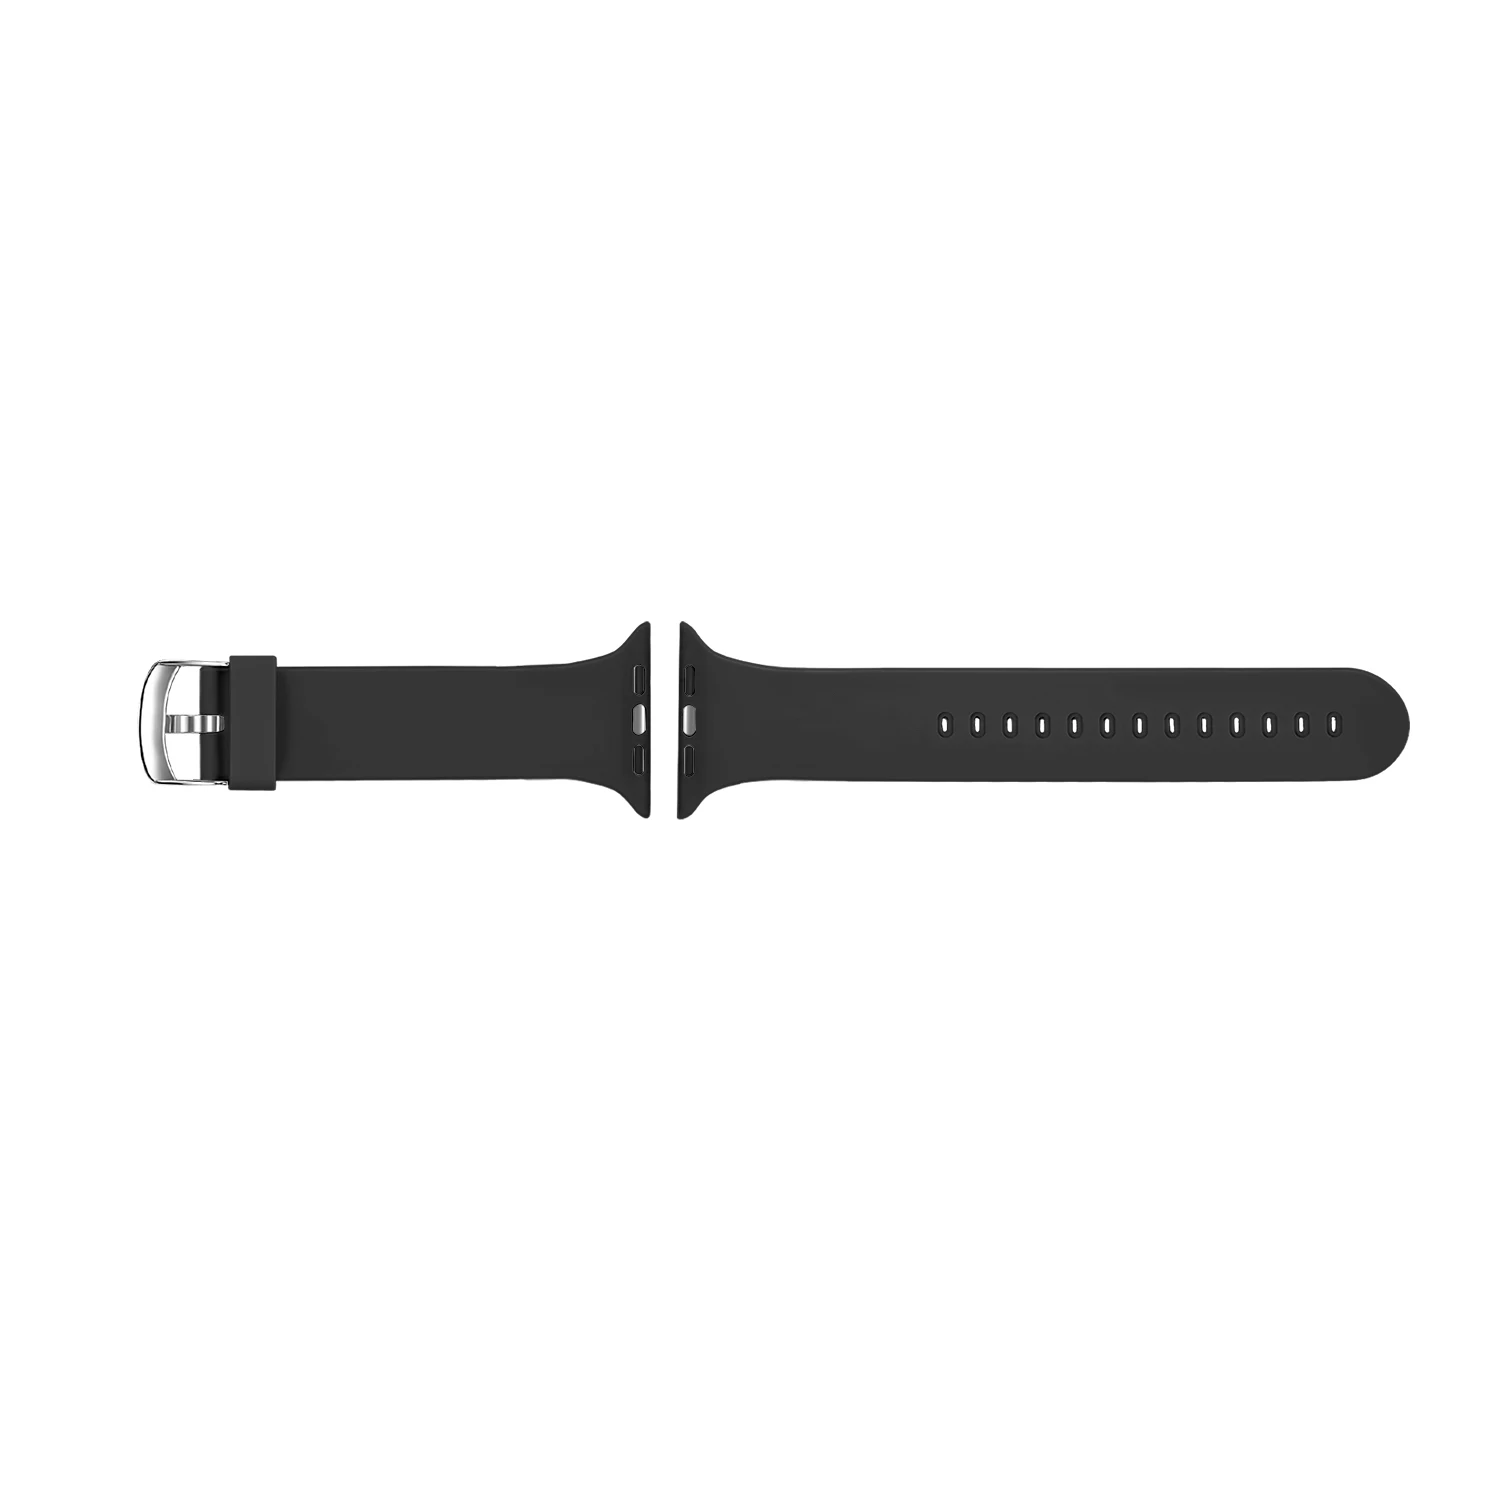 Мягкий силиконовый ремешок для Apple Watch Series 4, 3, 2, 1, 44 мм, 40 мм, 42 мм, 38 мм, детский сменный ремешок, браслет для iWatch 4, 3, 2